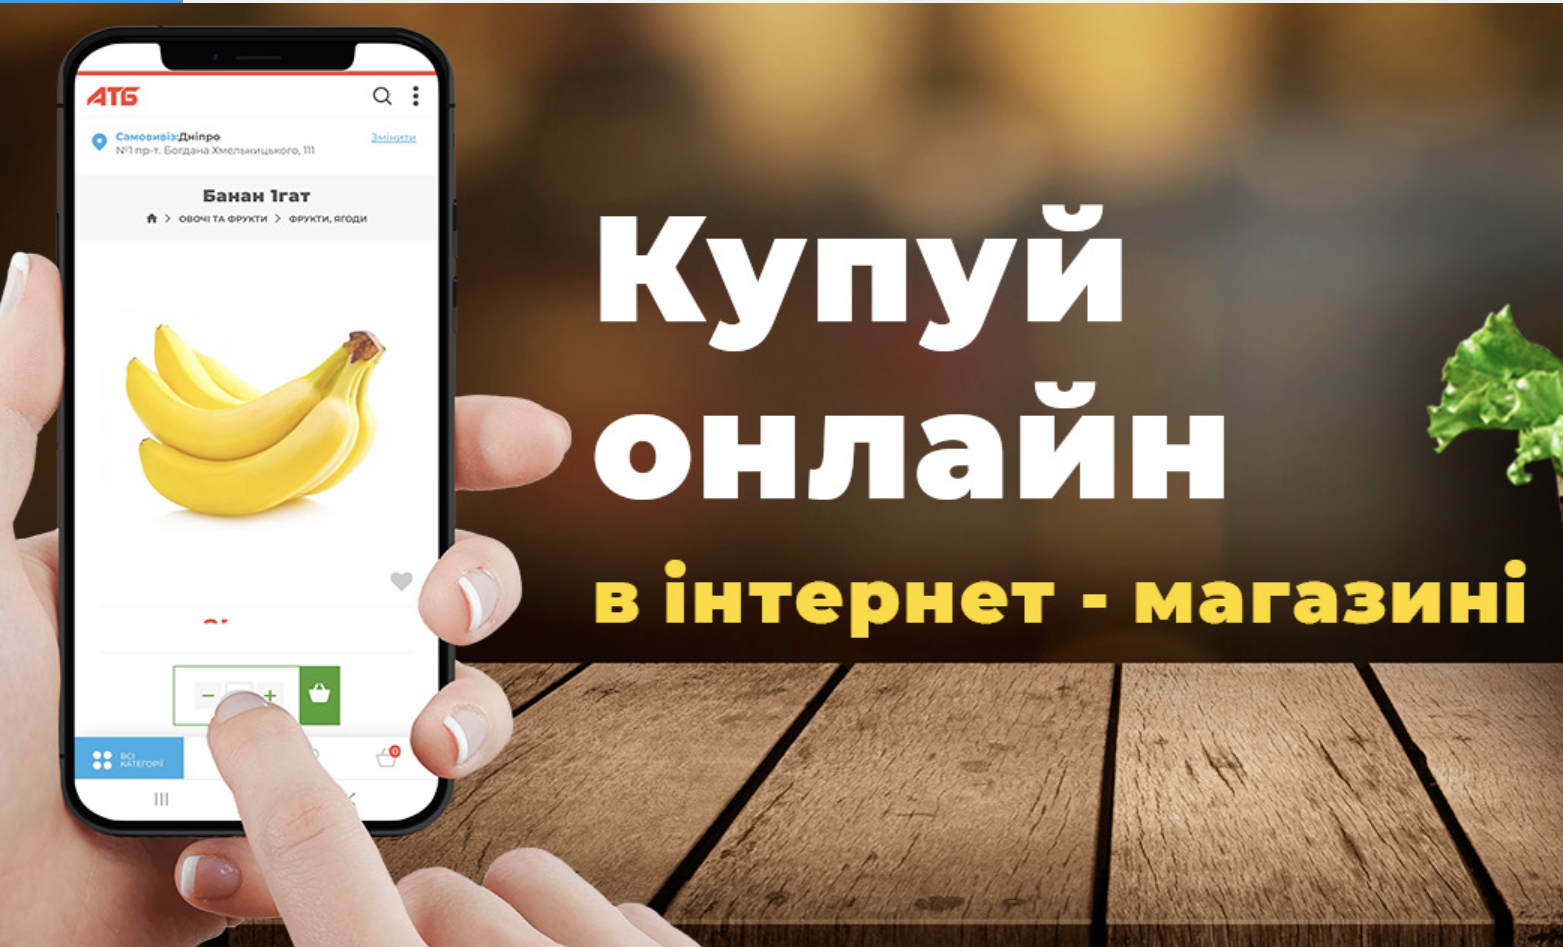 Интернет-магазин АТБ набирает популярность: купить еду онлайн в Украине может каждый